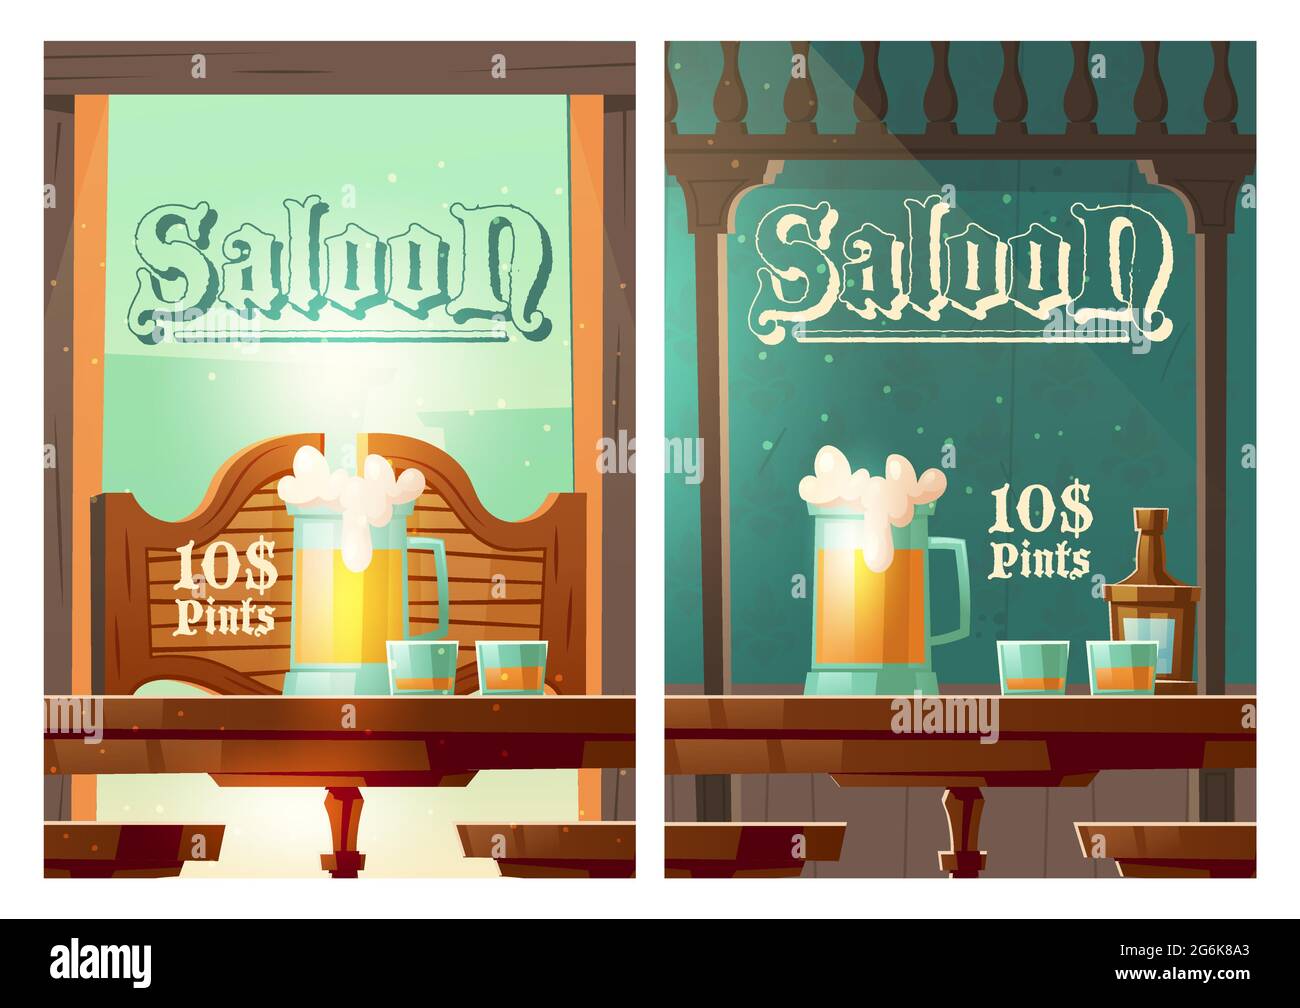 Cowboy Saloon Cartoon Banner, Glas Tankards mit schaumigem Bier und Shots mit Alkoholgetränken stehen auf Holz alten Stil Tisch in Wild West Taverne. Einladung zum Retro Pub oder Bar Vector Poster Stock Vektor